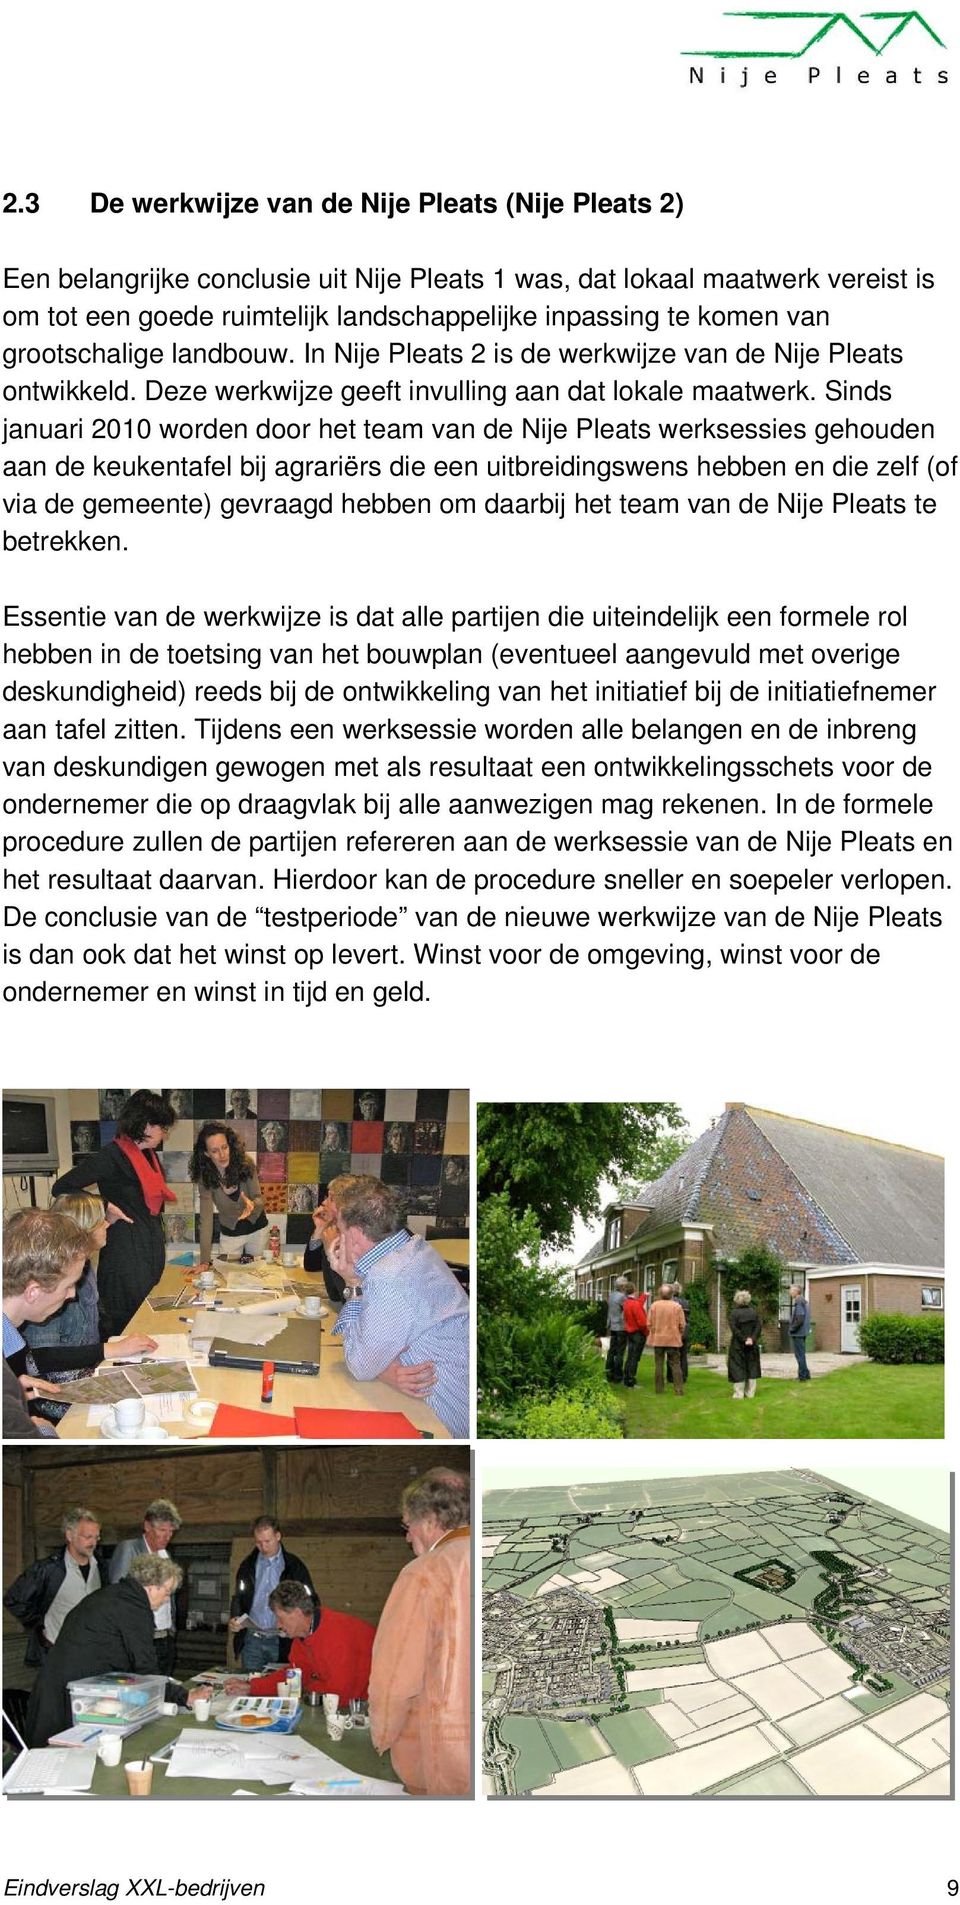 Sinds januari 2010 worden door het team van de Nije Pleats werksessies gehouden aan de keukentafel bij agrariërs die een uitbreidingswens hebben en die zelf (of via de gemeente) gevraagd hebben om